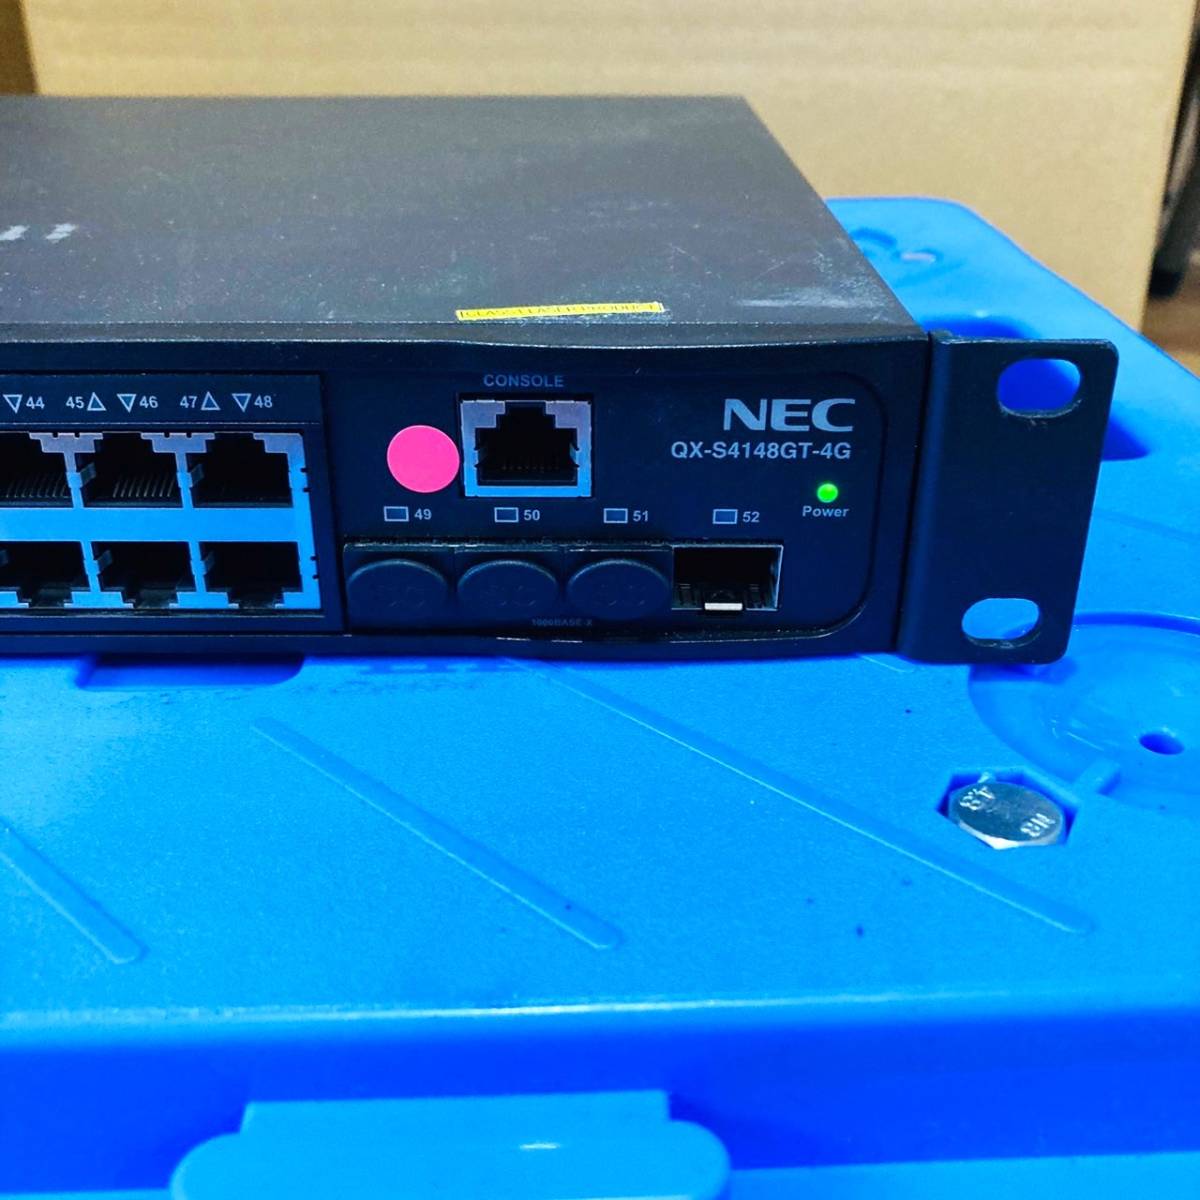 253[ электризация OK]NEC QX-S4148GT-4G B02014-04104 слой 2 переключатель switchs вертикальный . Crew tingIRFs tuck переключение ступица 